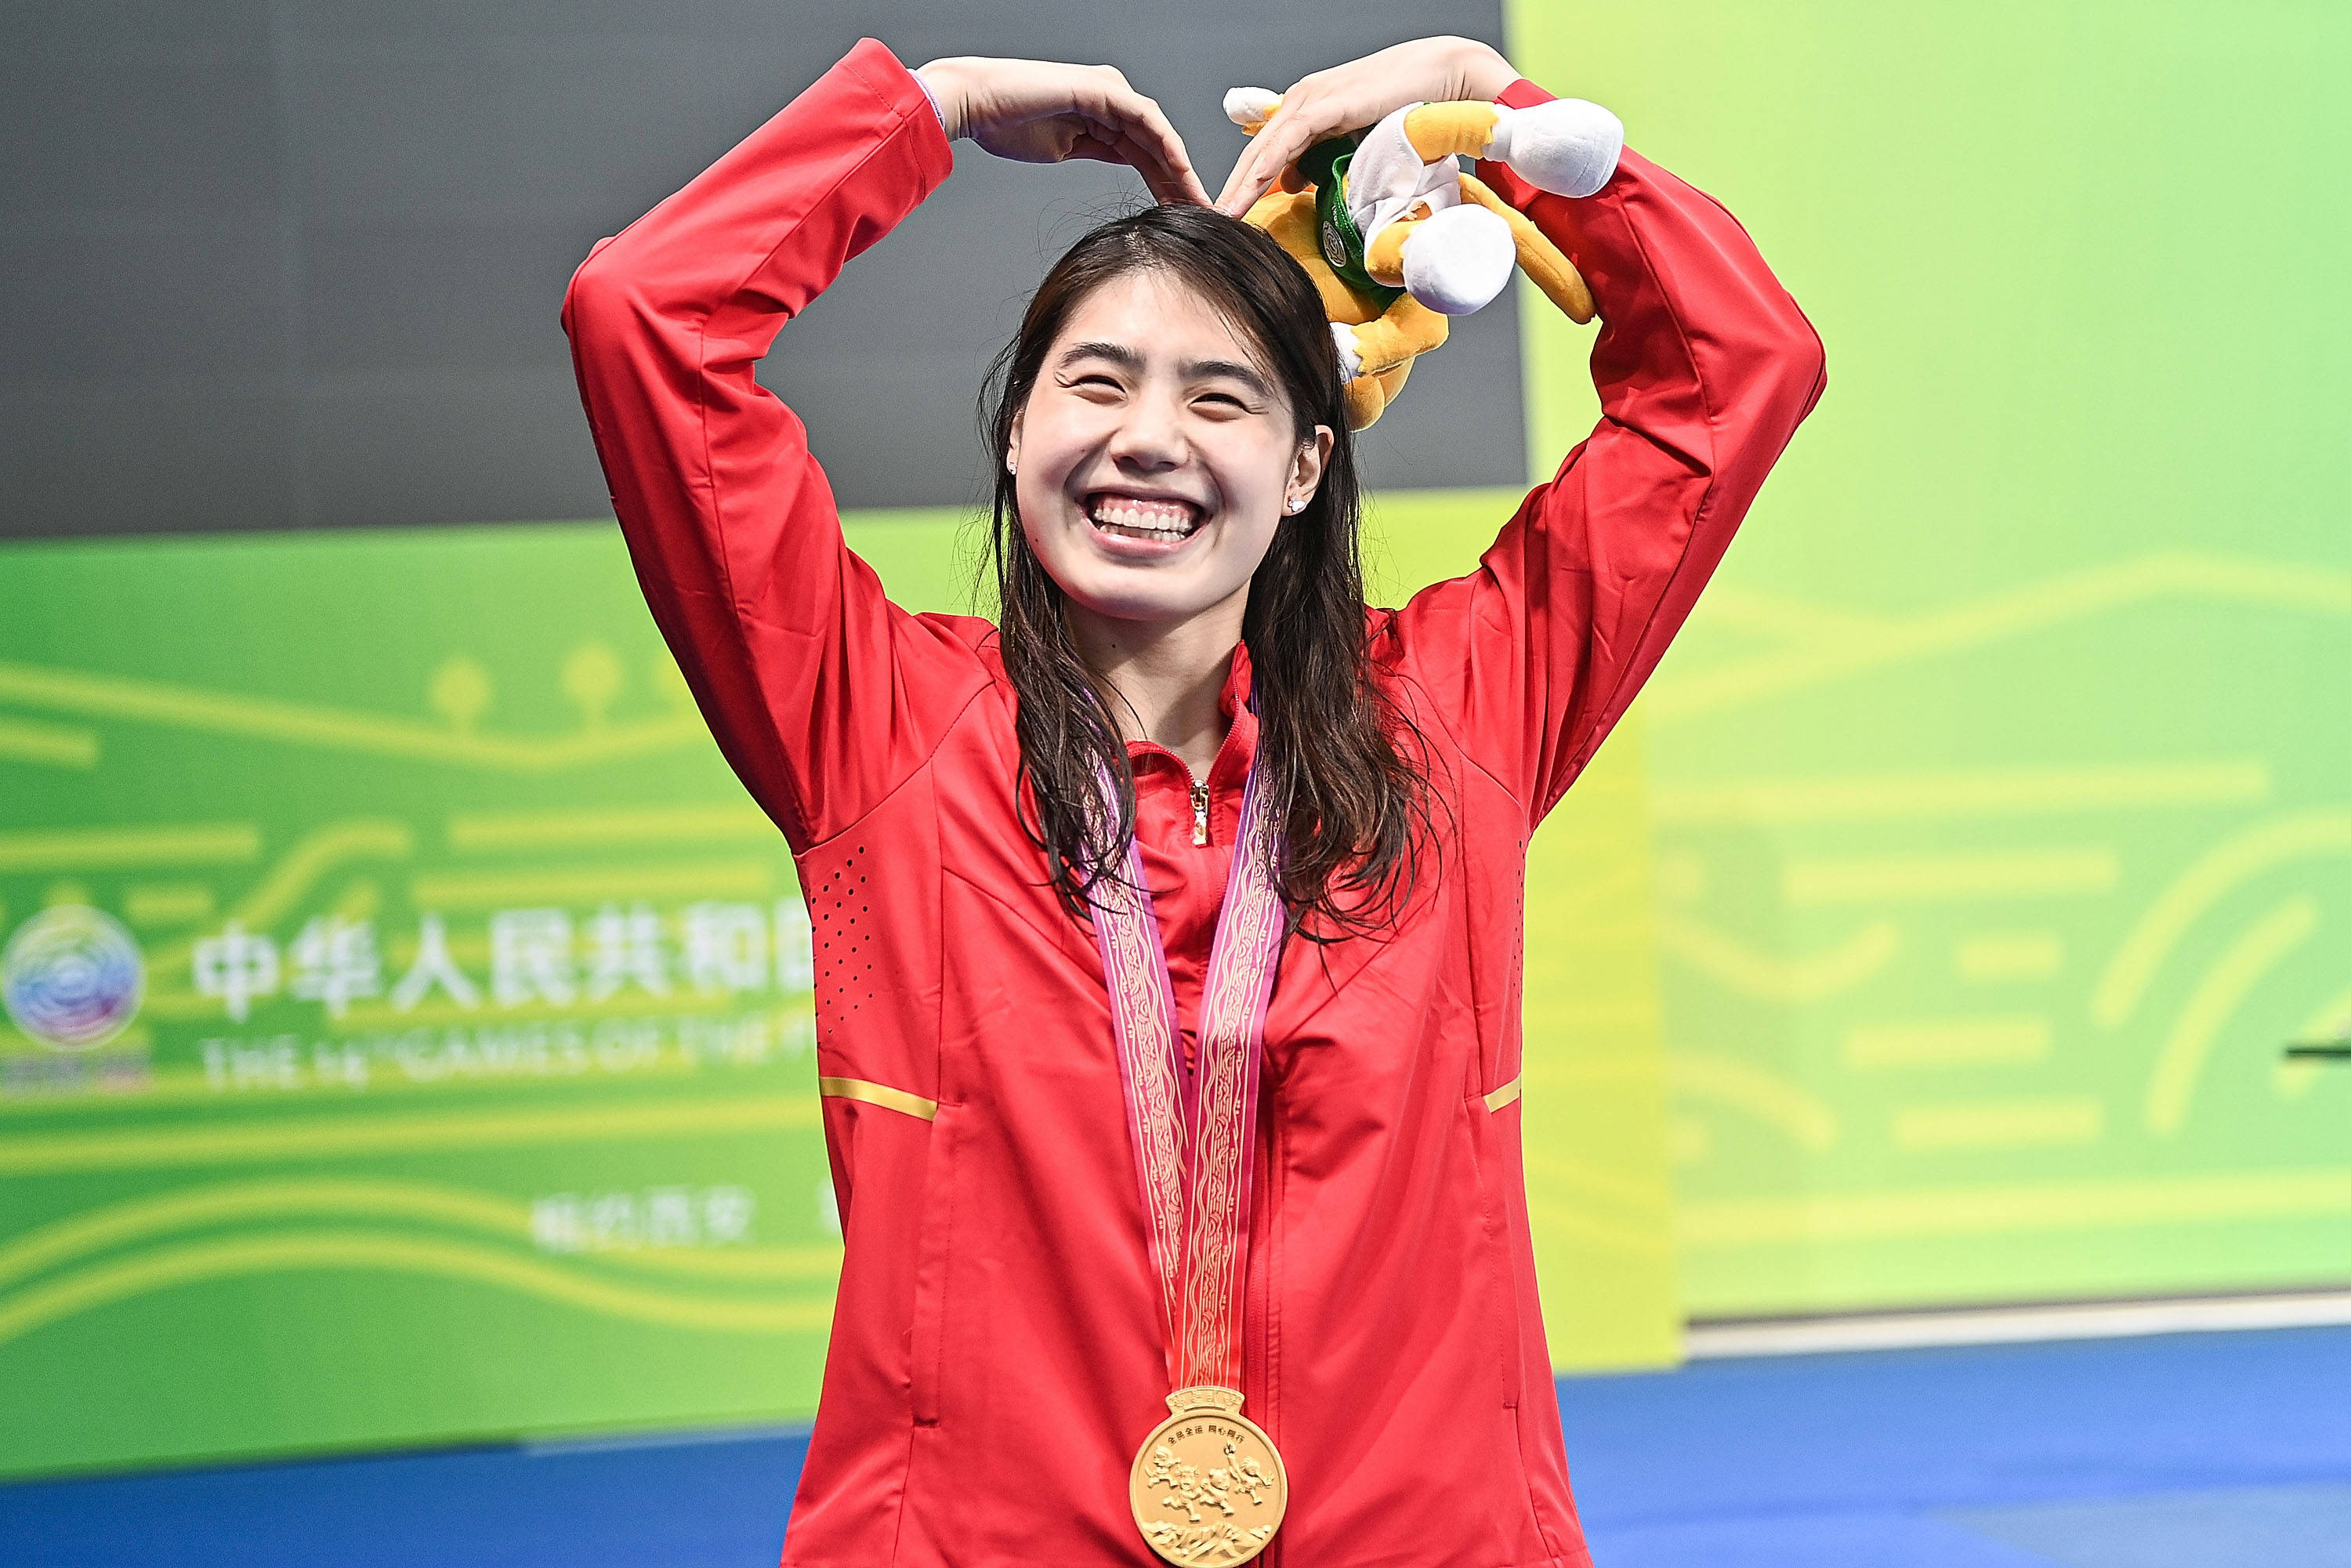 中国跳水奥运冠军李婷成为2019年国际游泳名人堂最新成员